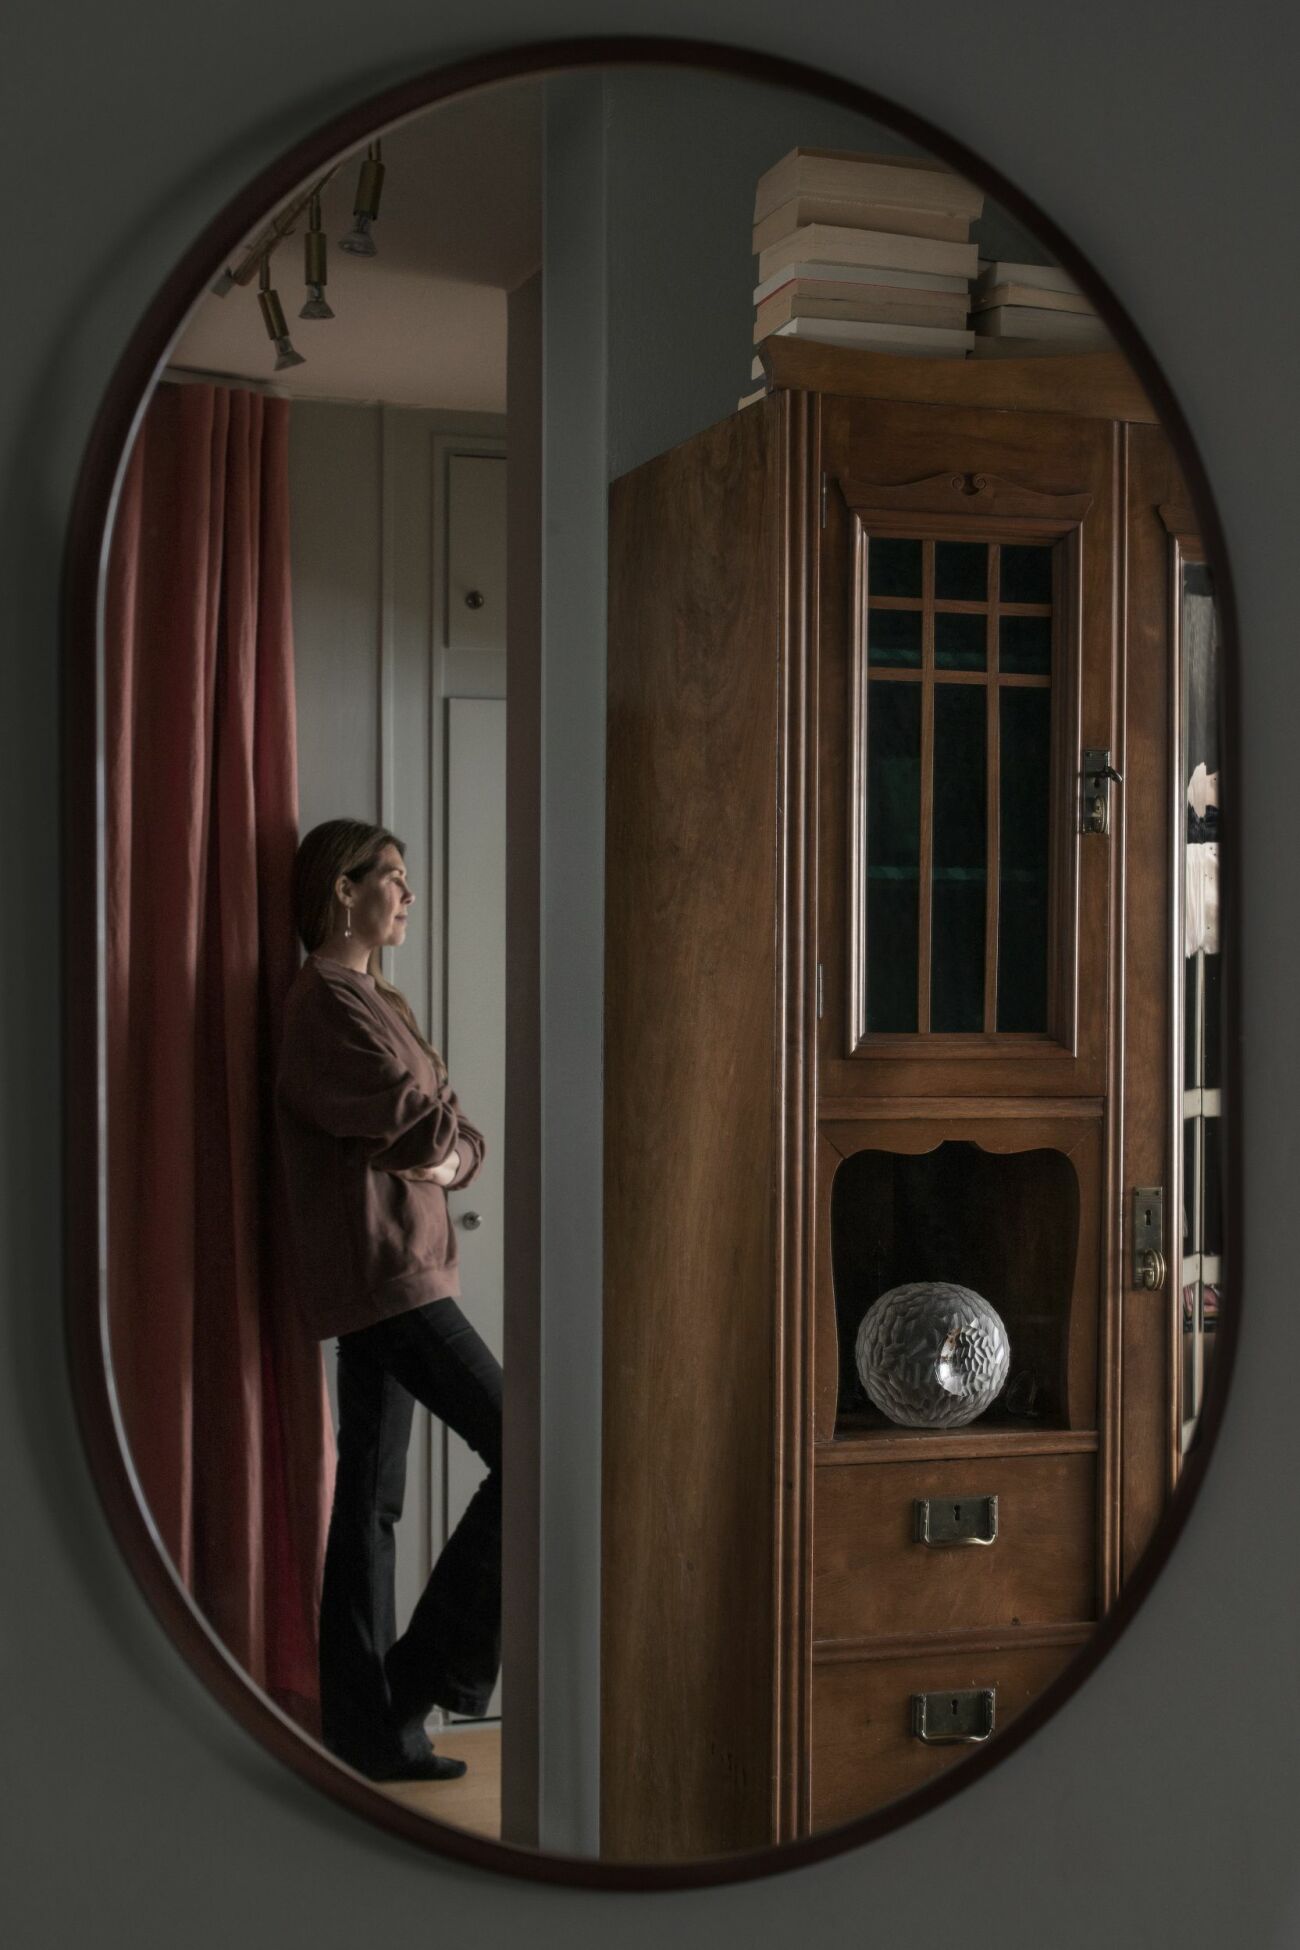 I en oval spegeln från Montana syns Karin Sköldberg stå lutad mot väggen. Vi ser hennes morfars skåp och ett draperi från Astrid.